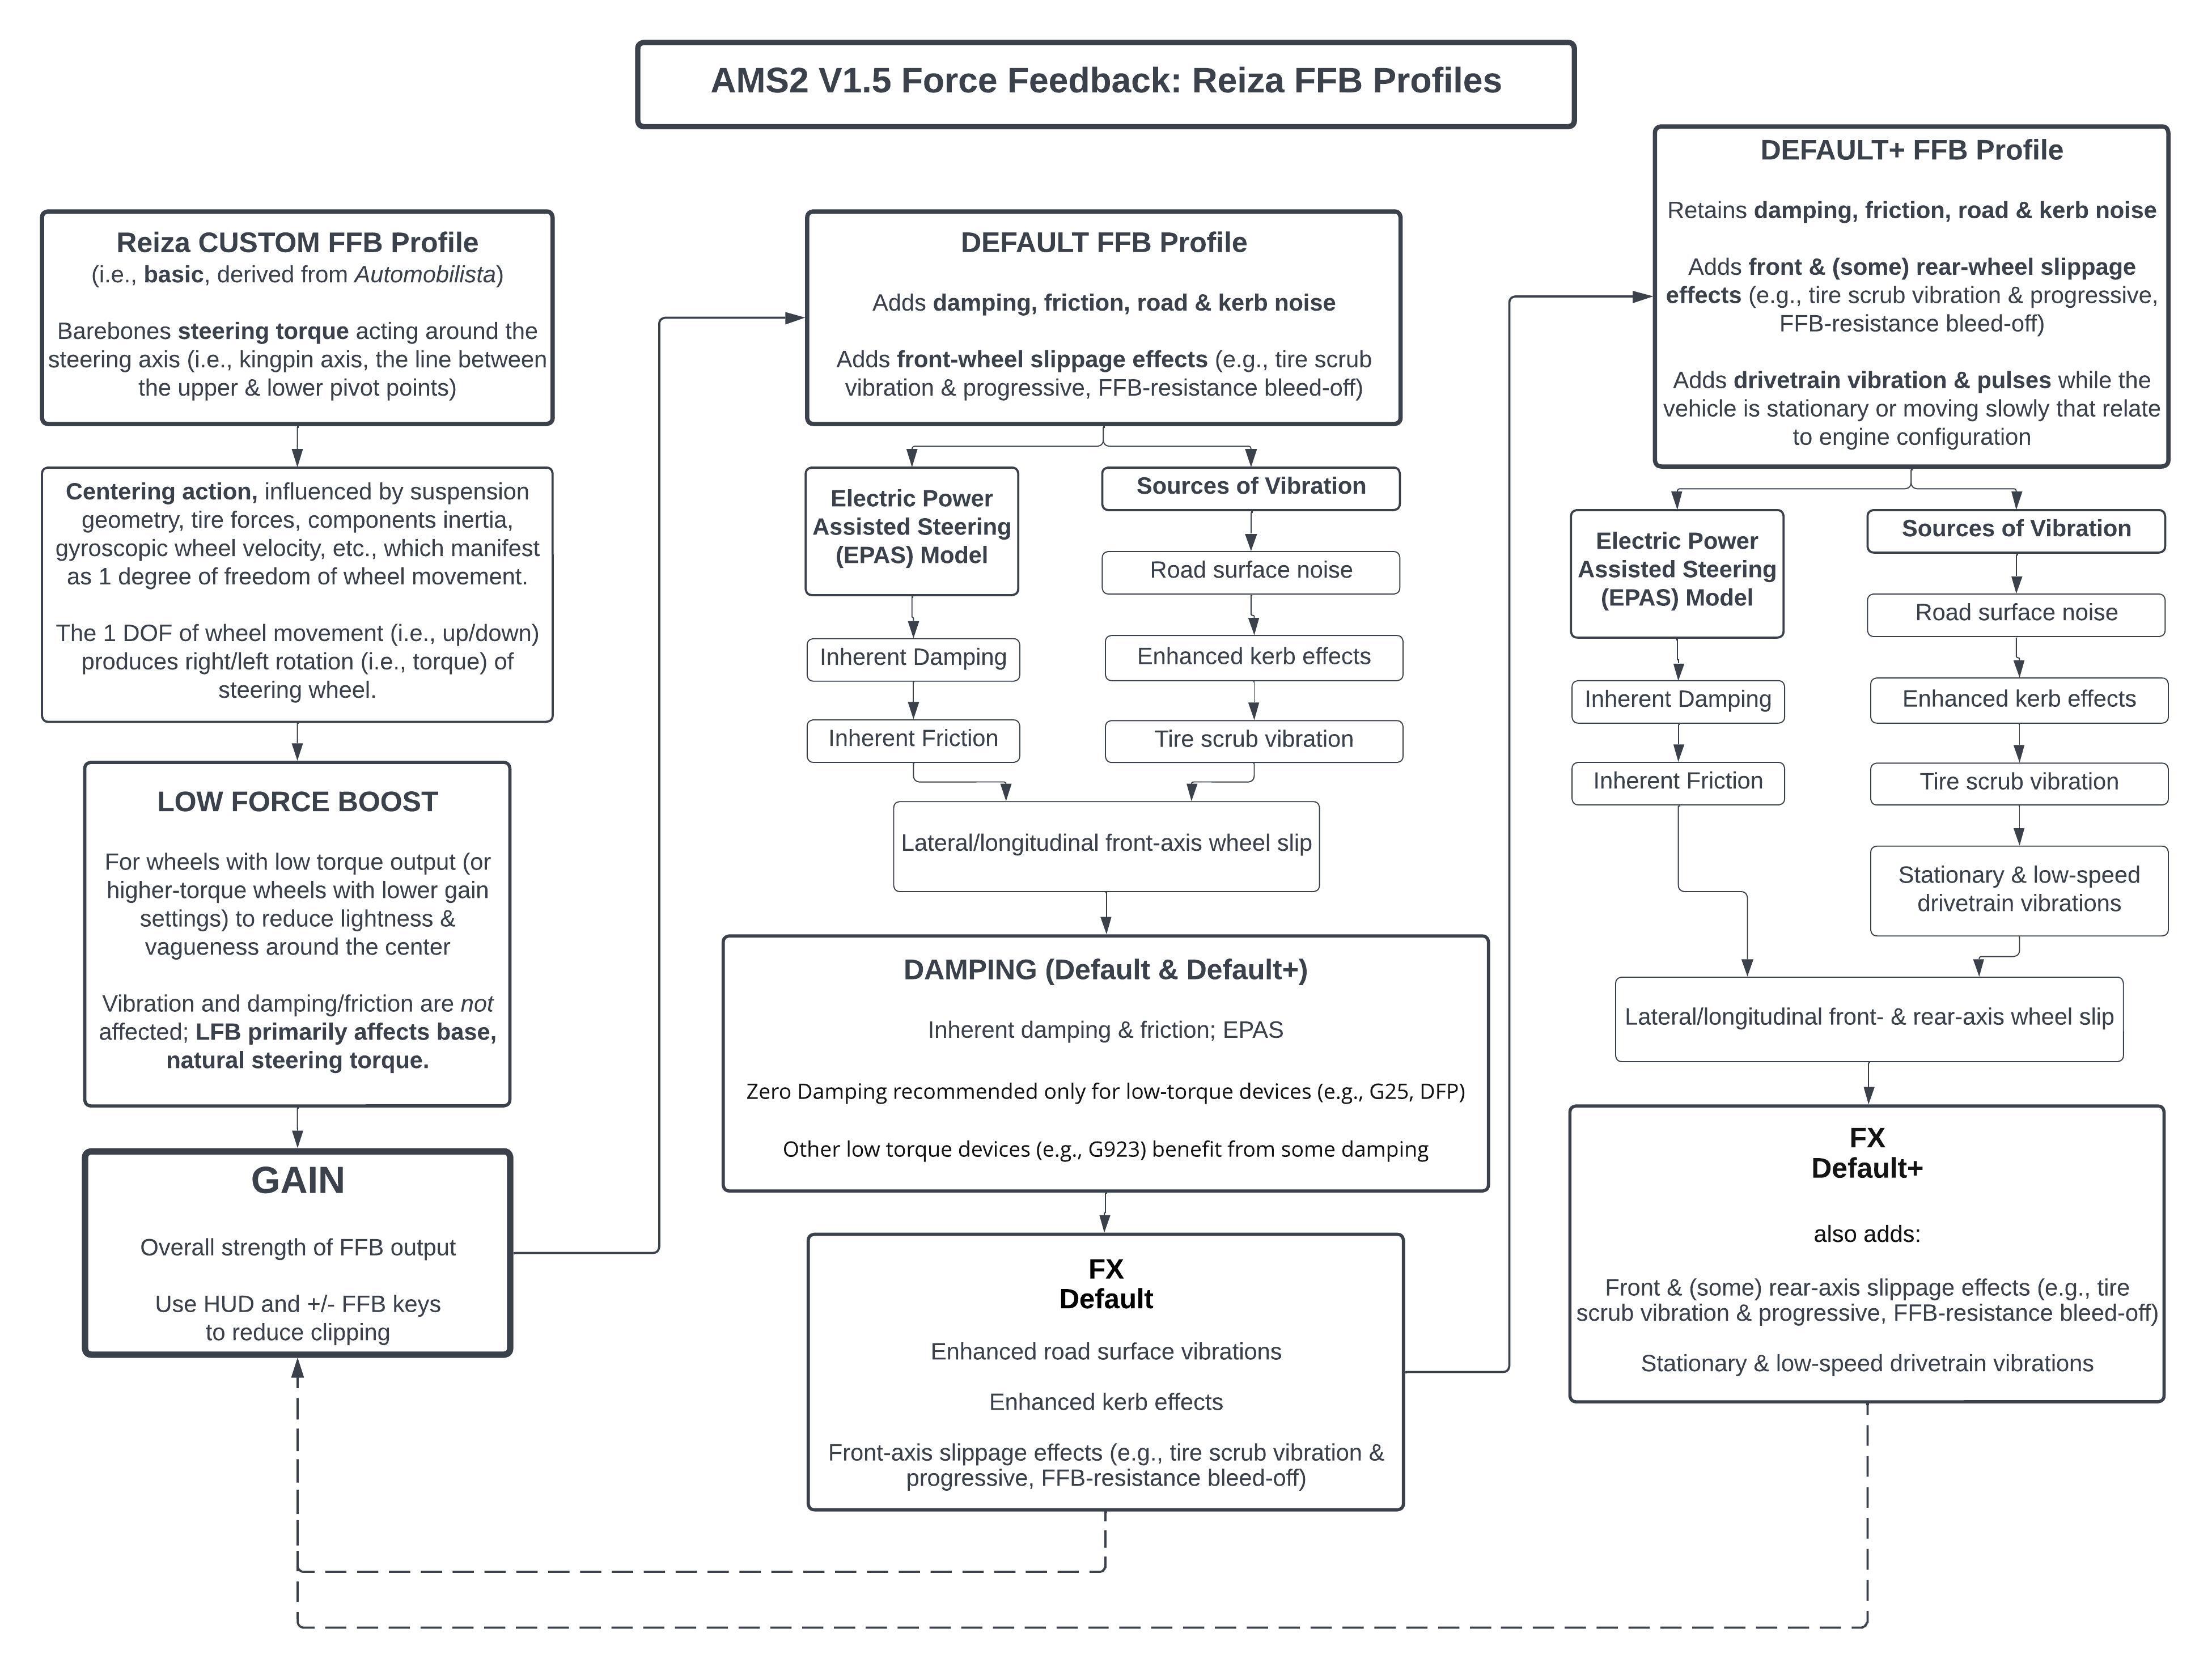 AMS2 FFB Profiles V1.5.jpeg